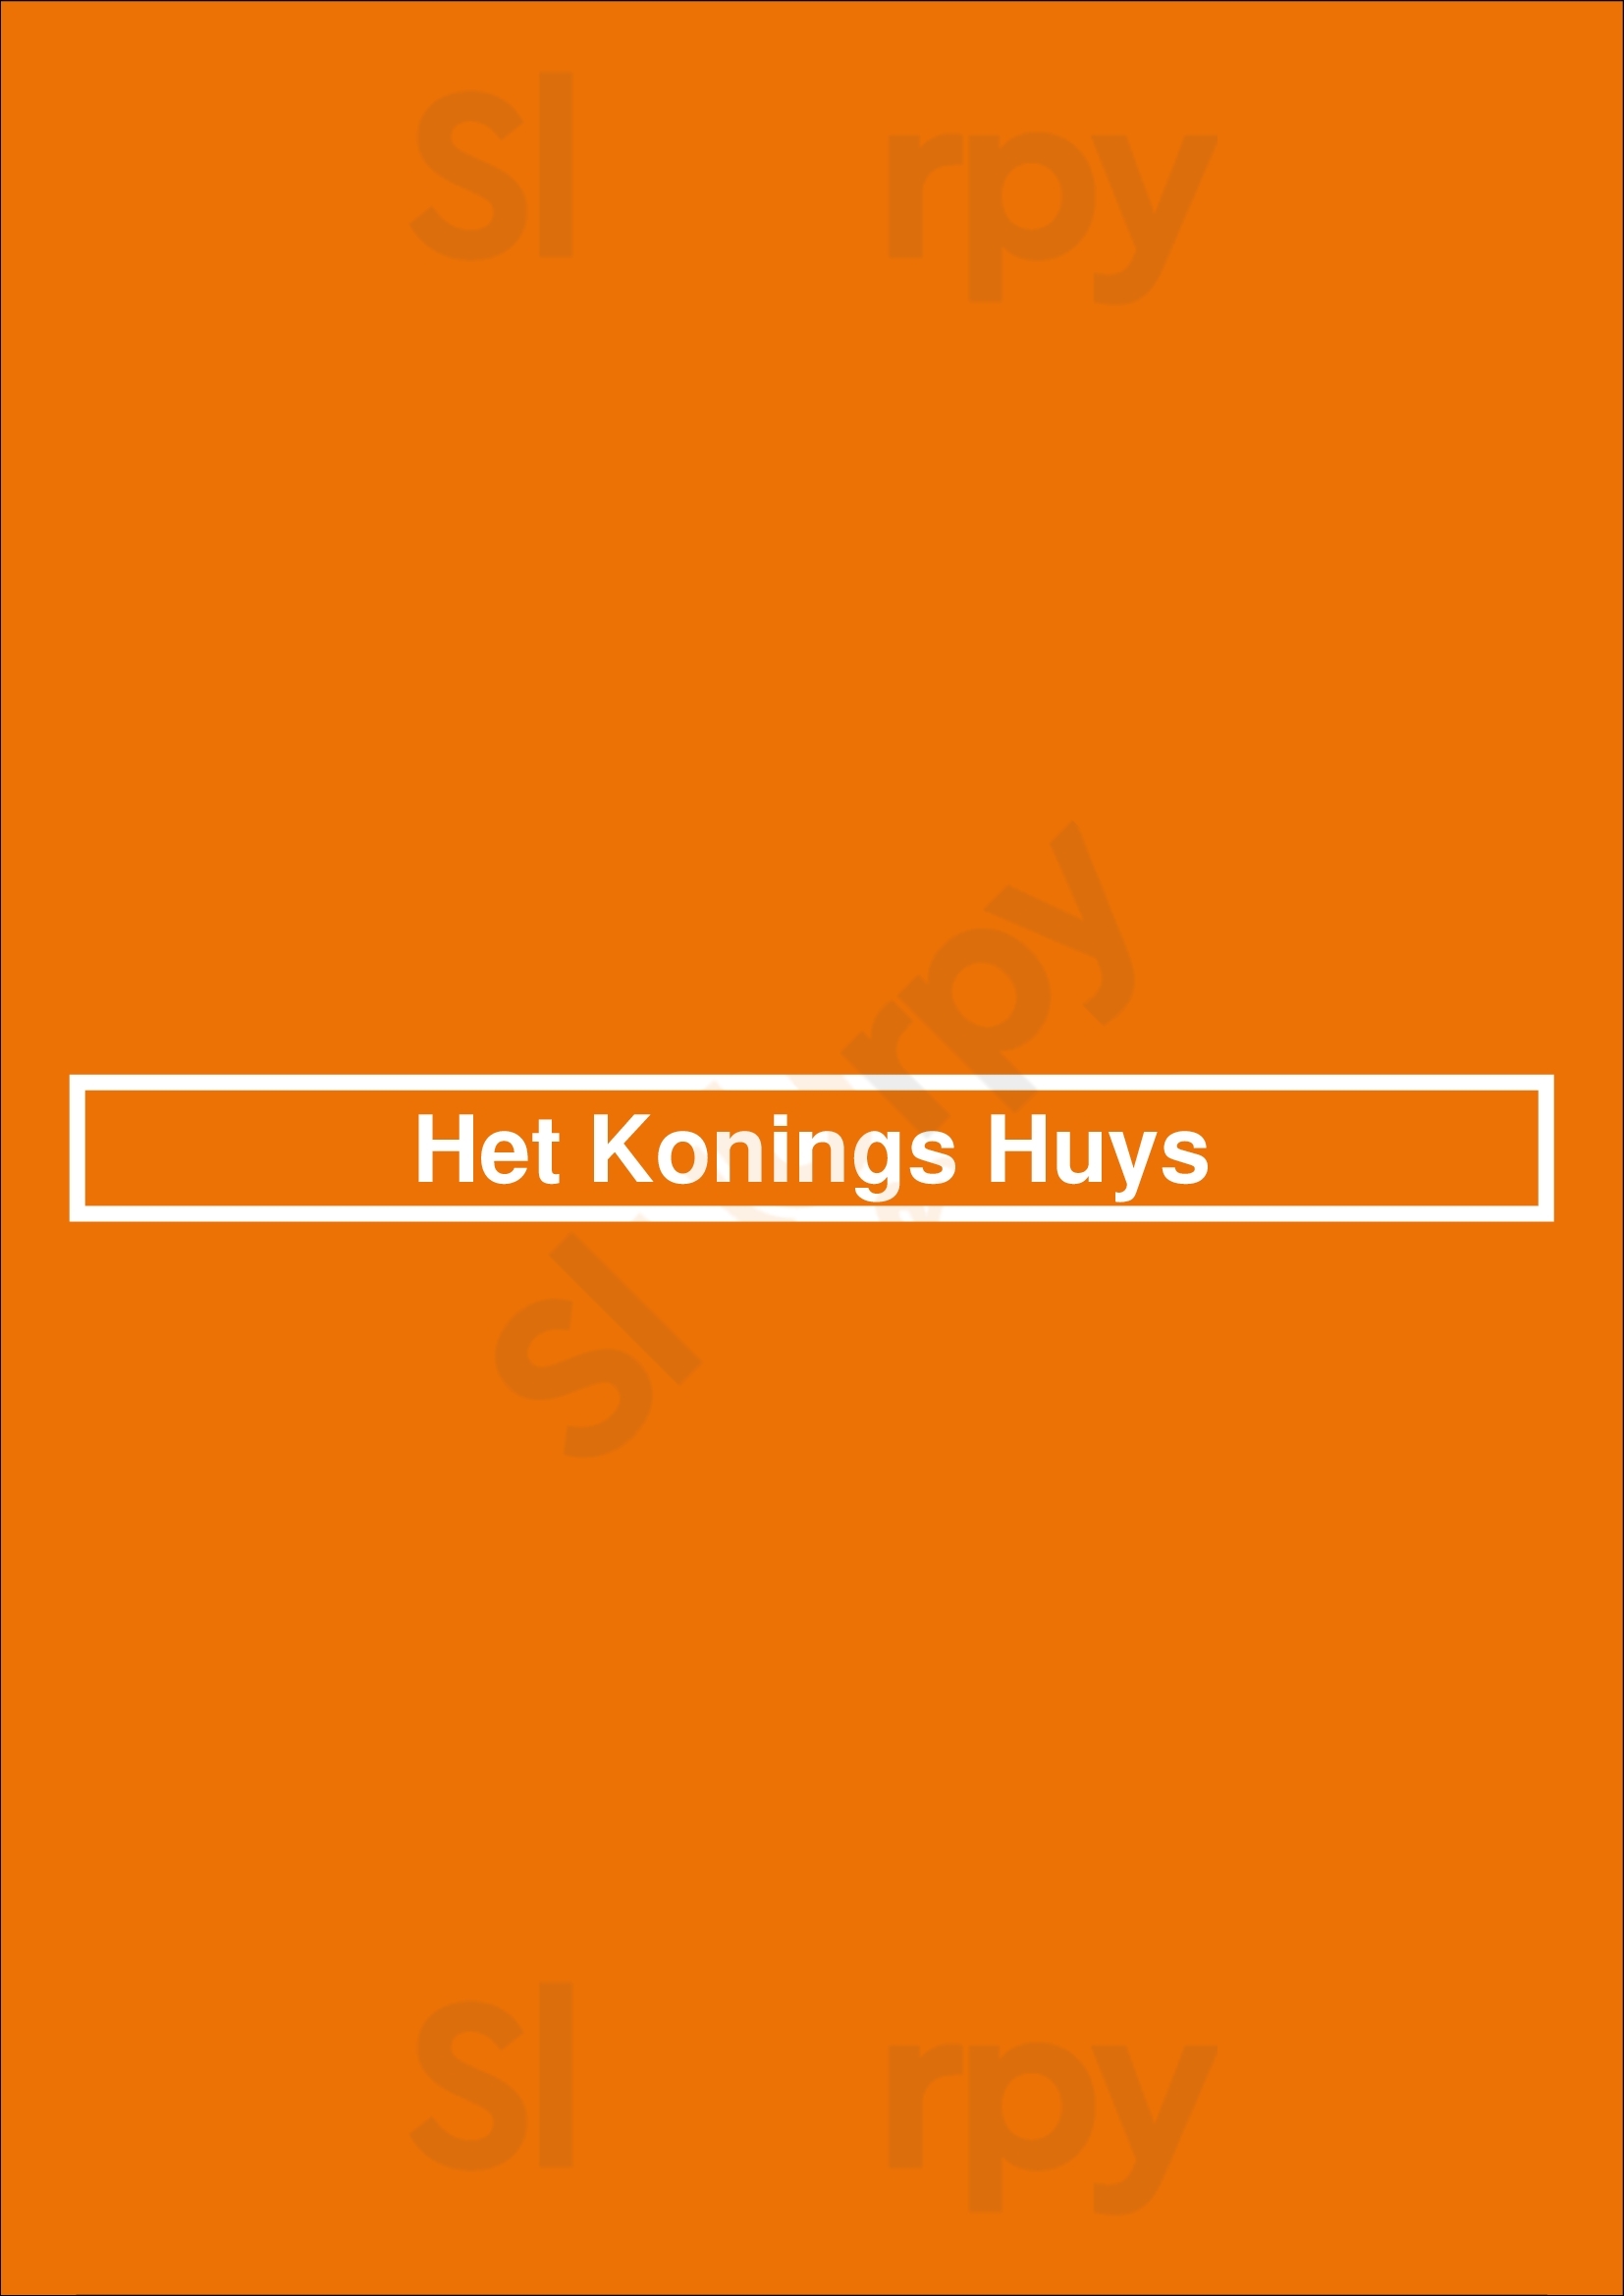 Het Konings Huys Delft Menu - 1